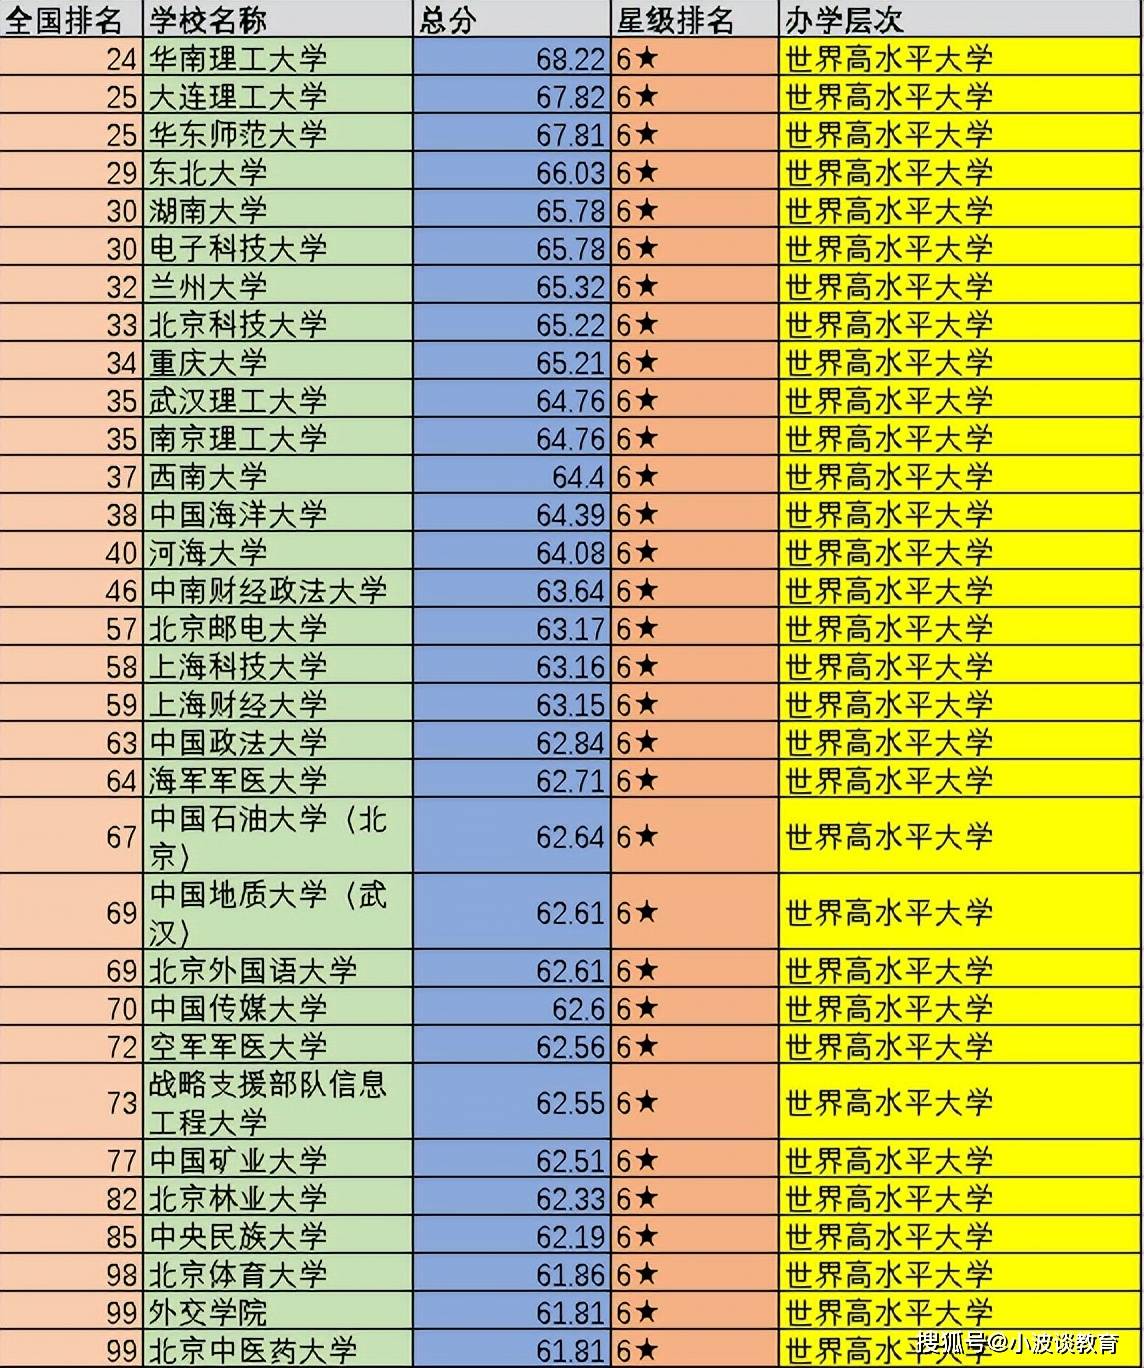 中国大学前100强:可分为5个不同的档次,你心仪的大学在第几档?